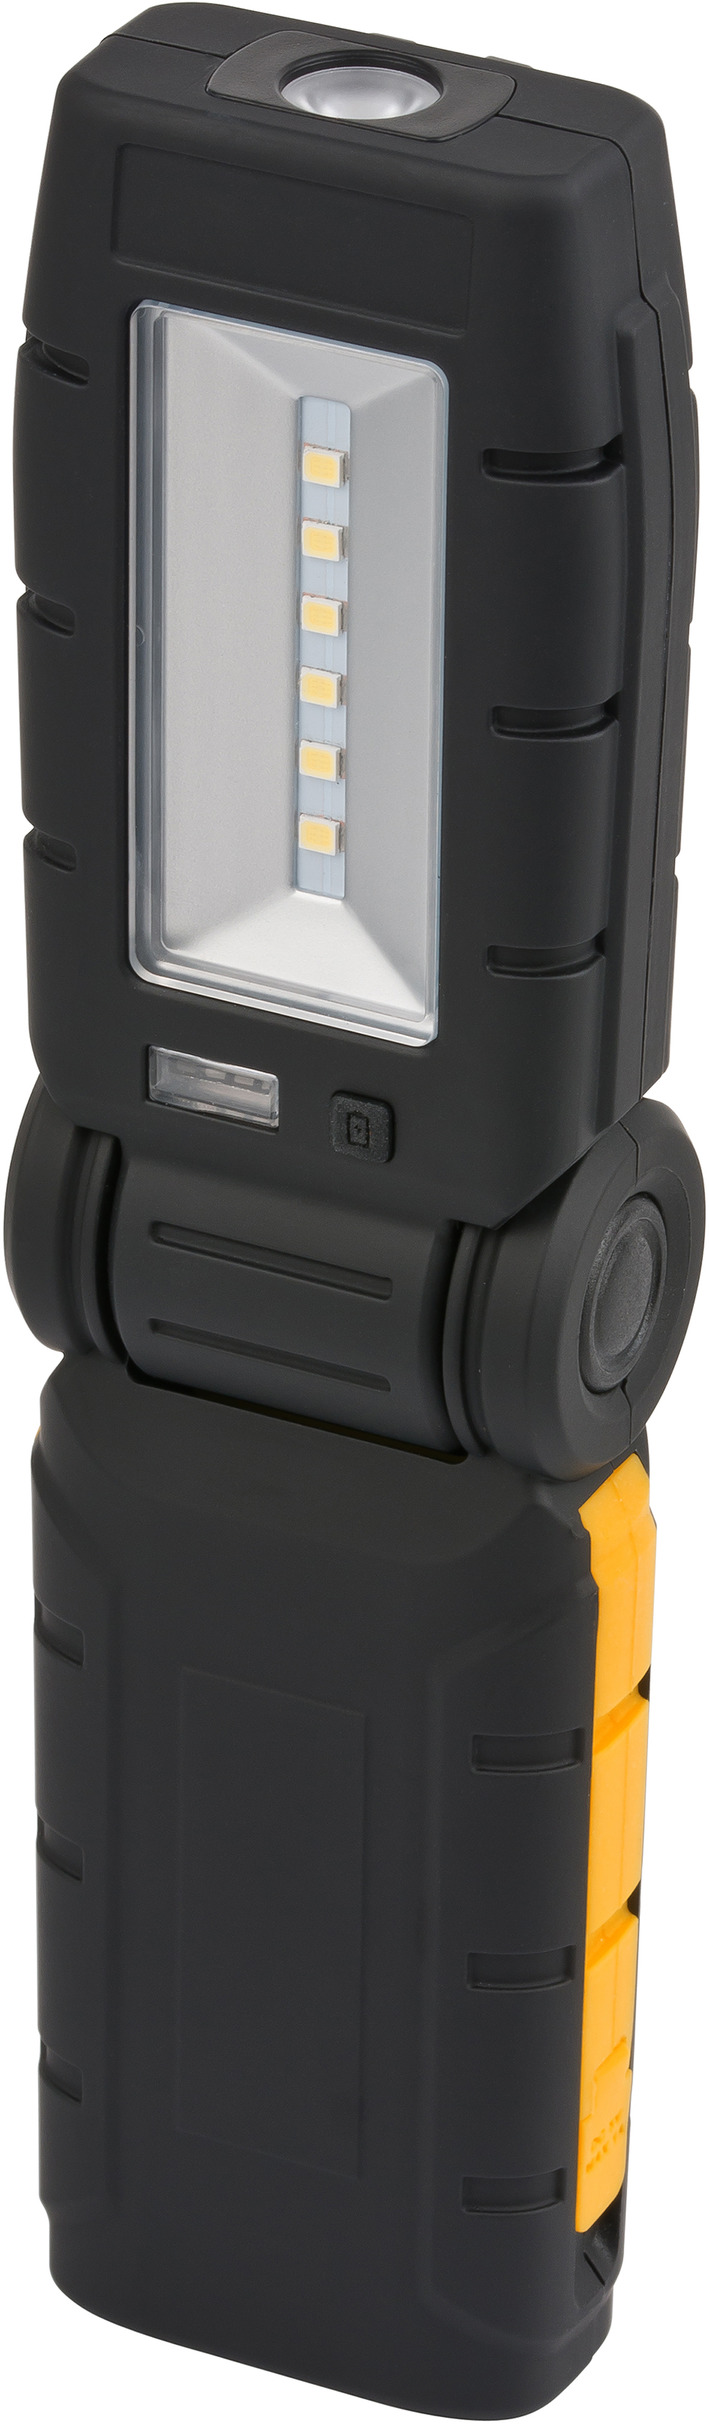 1175450 - Brennenstuhl] Lampe portable 6+1 LED